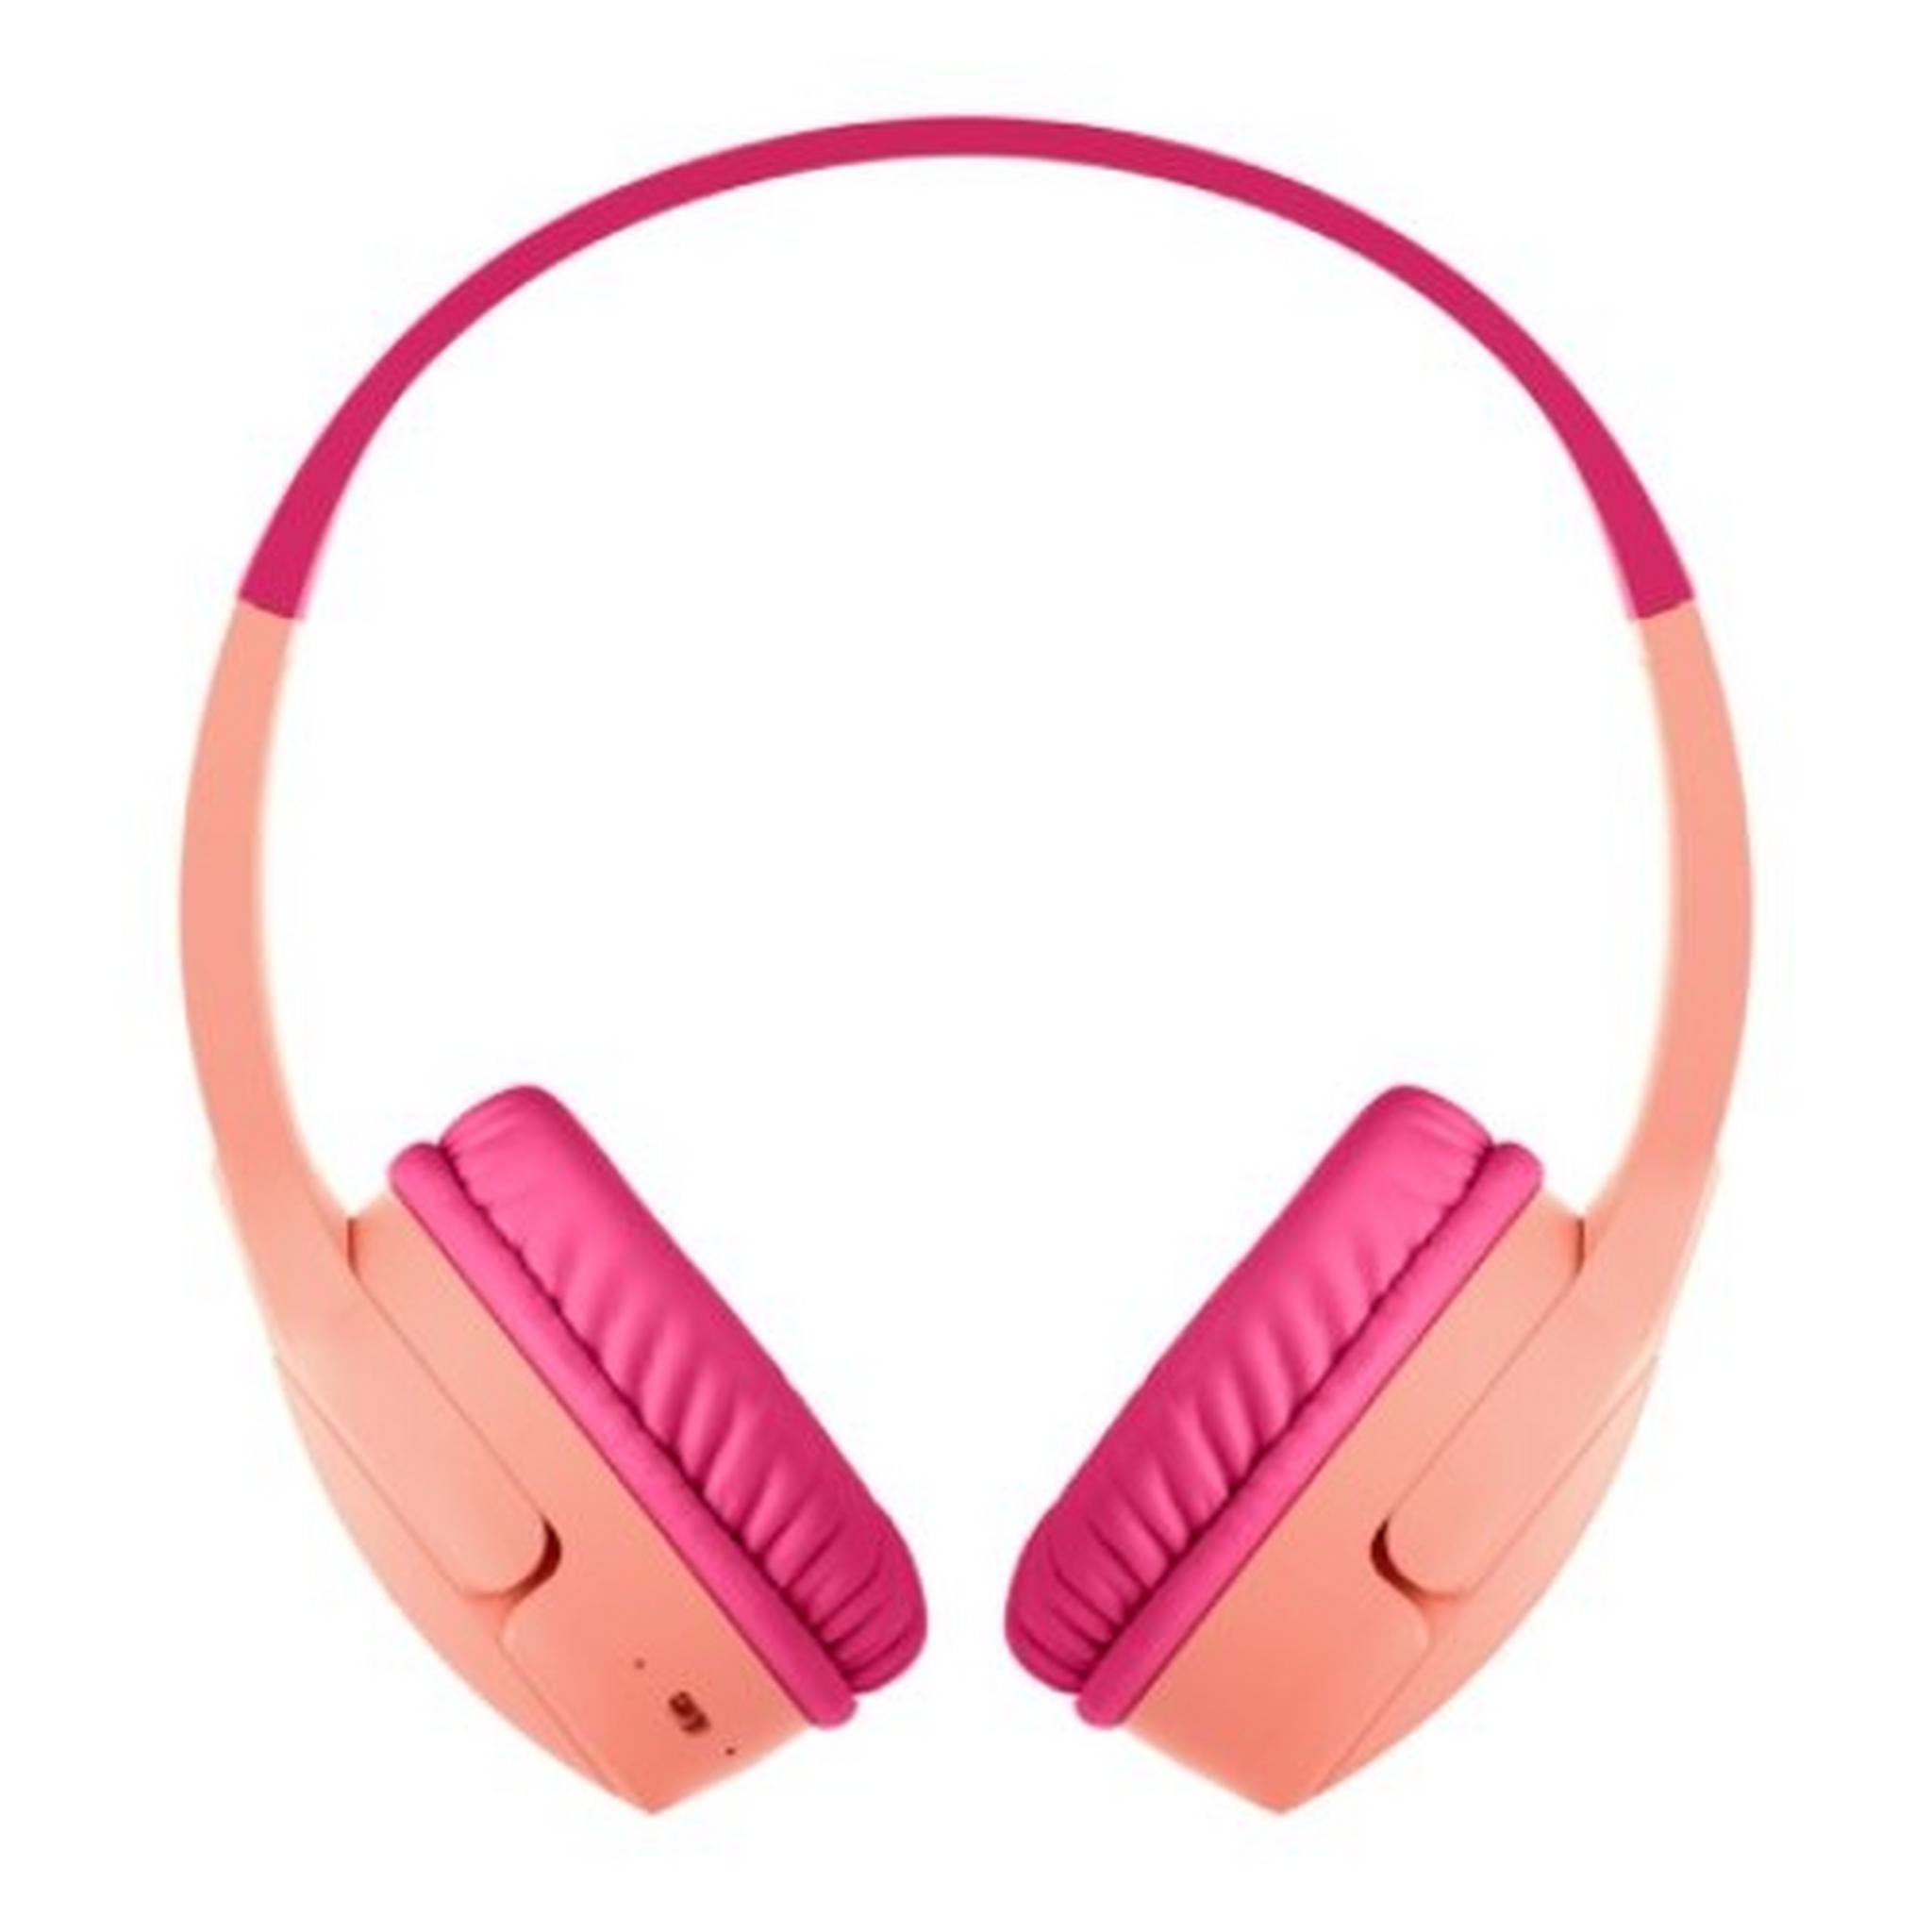 Belkin SoundForm Mini Wireless On-Ear Kids Headphones - Pink